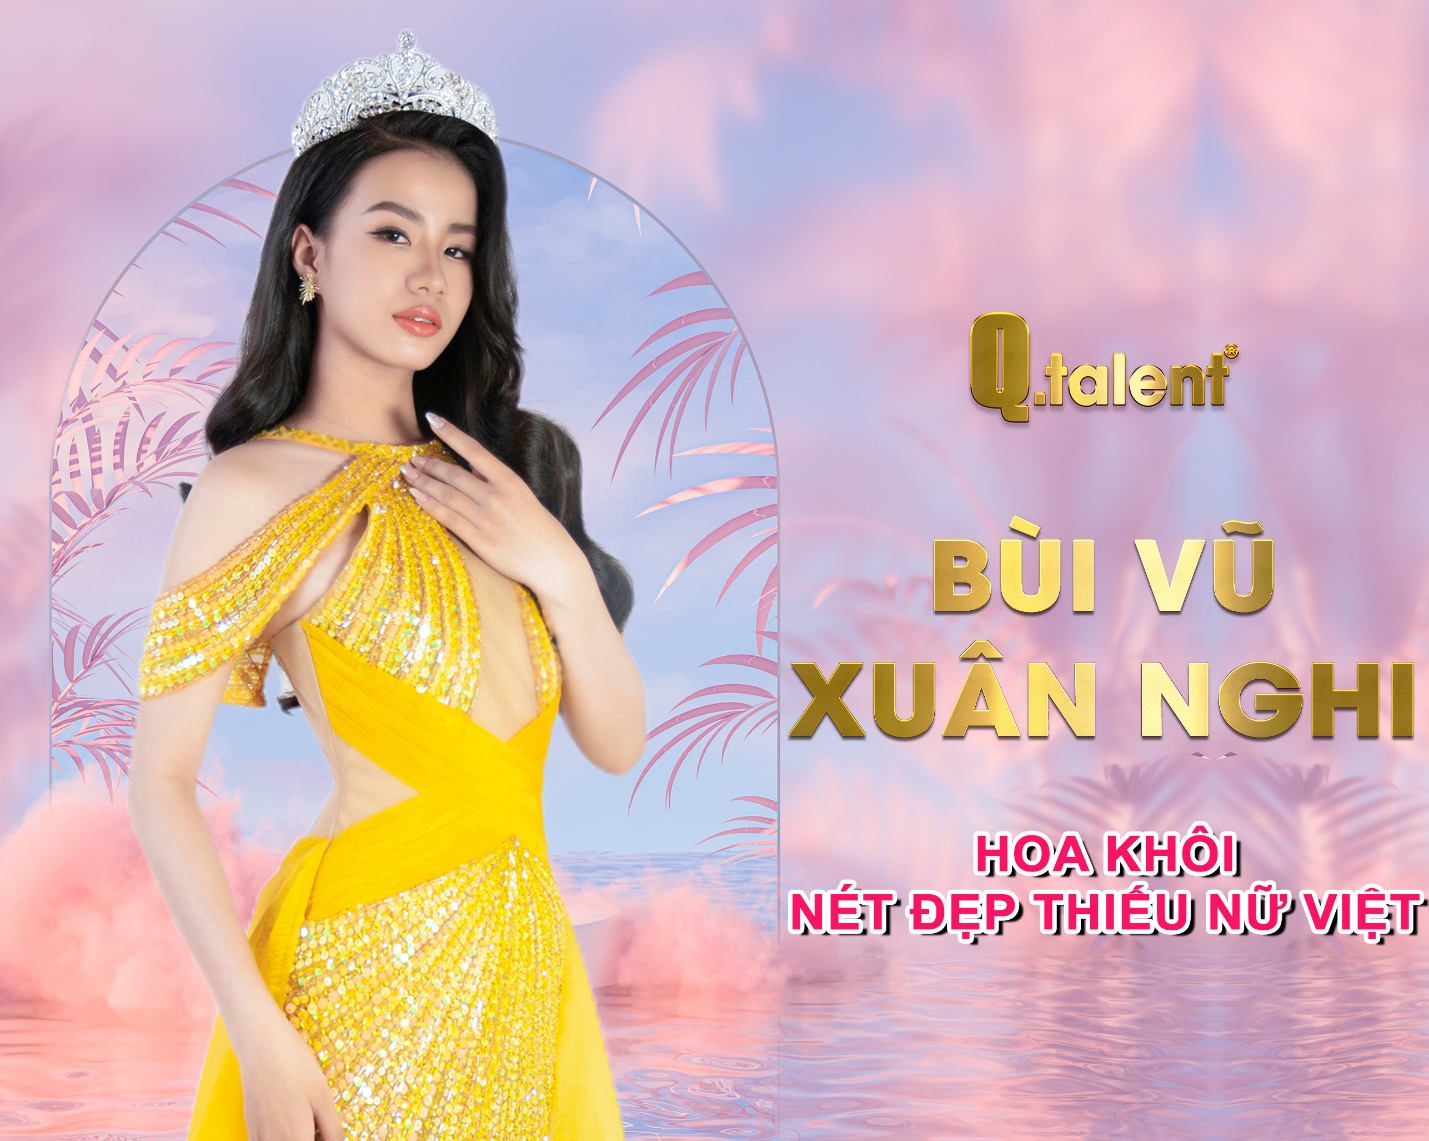 Công ty truyền thông Q-Talent, đơn vị uy tín chuyên tổ chức các cuộc thi sắc đẹp và đào tạo hoa hậu ở mọi độ tuổi tại Việt Nam - Ảnh 4.